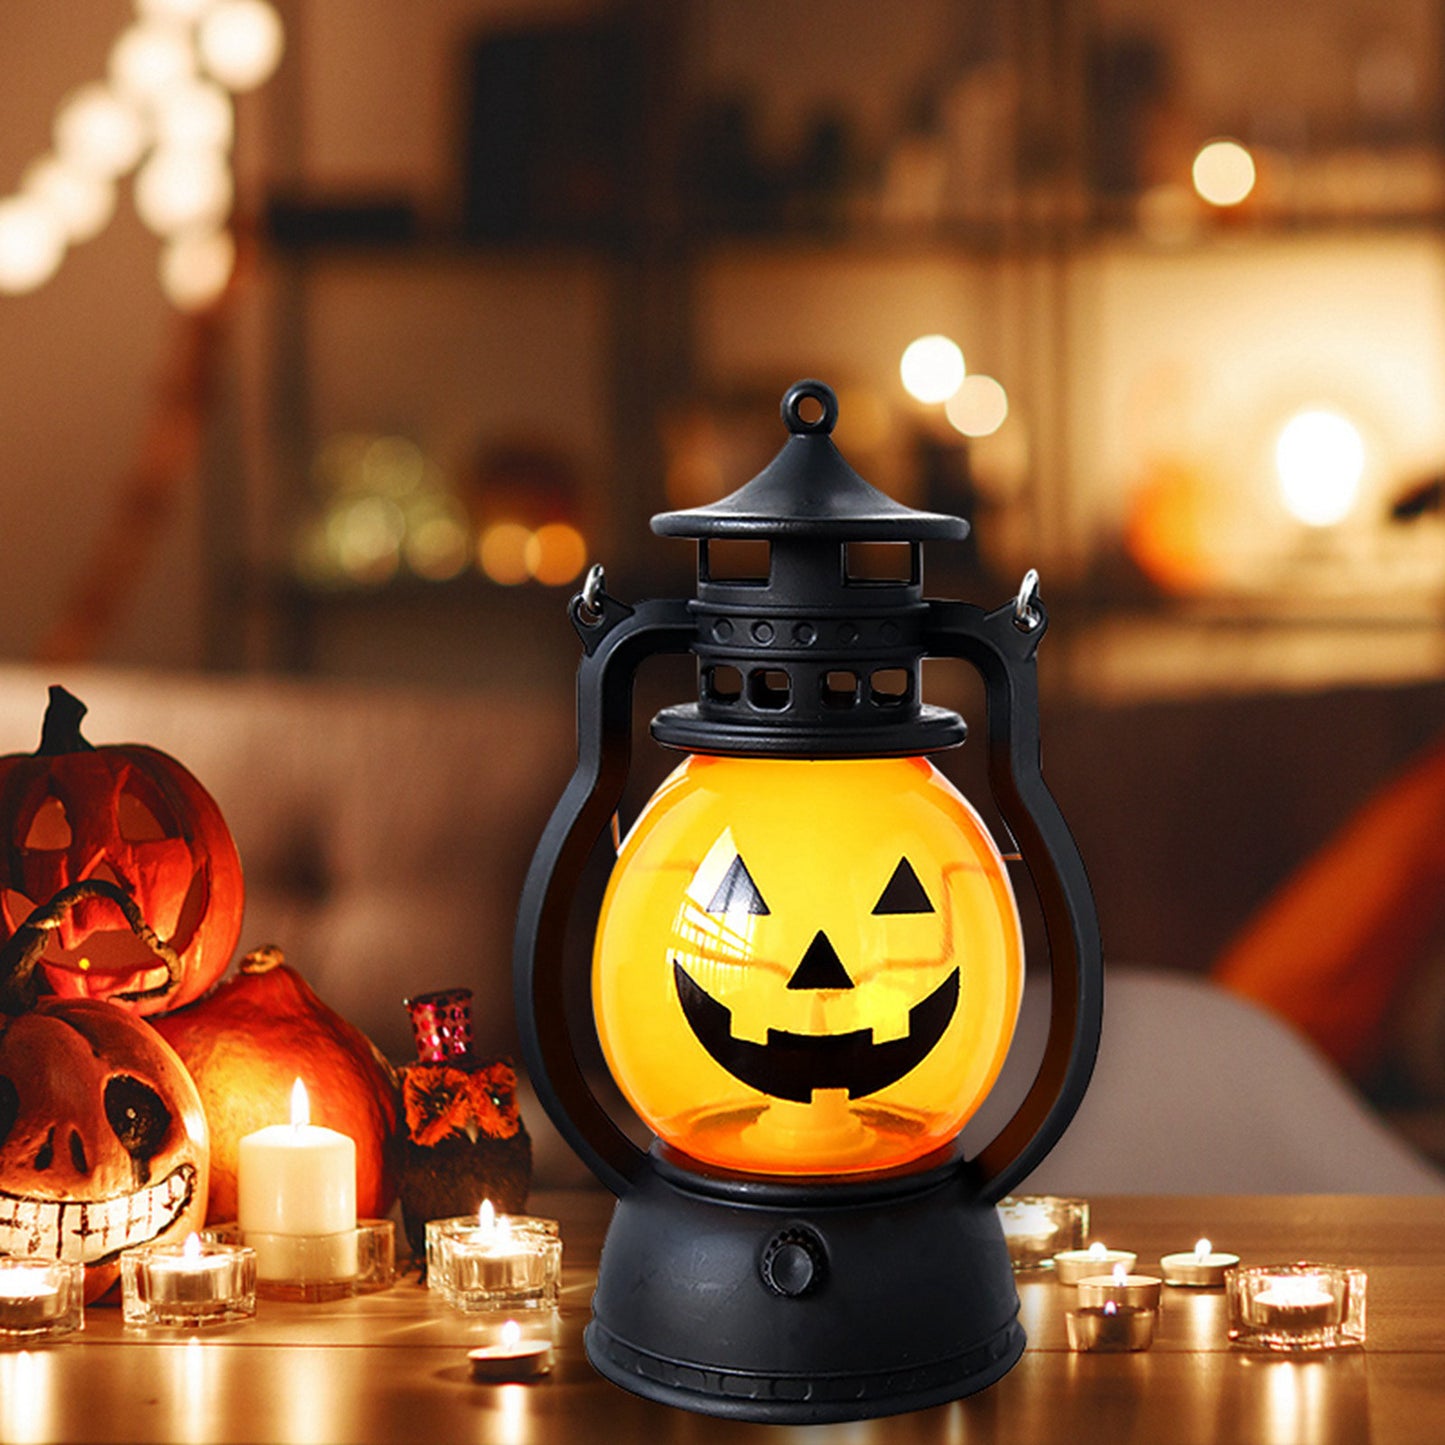 Pumpkin Lantern Halloween Decoration Type Smiling Night Lantern